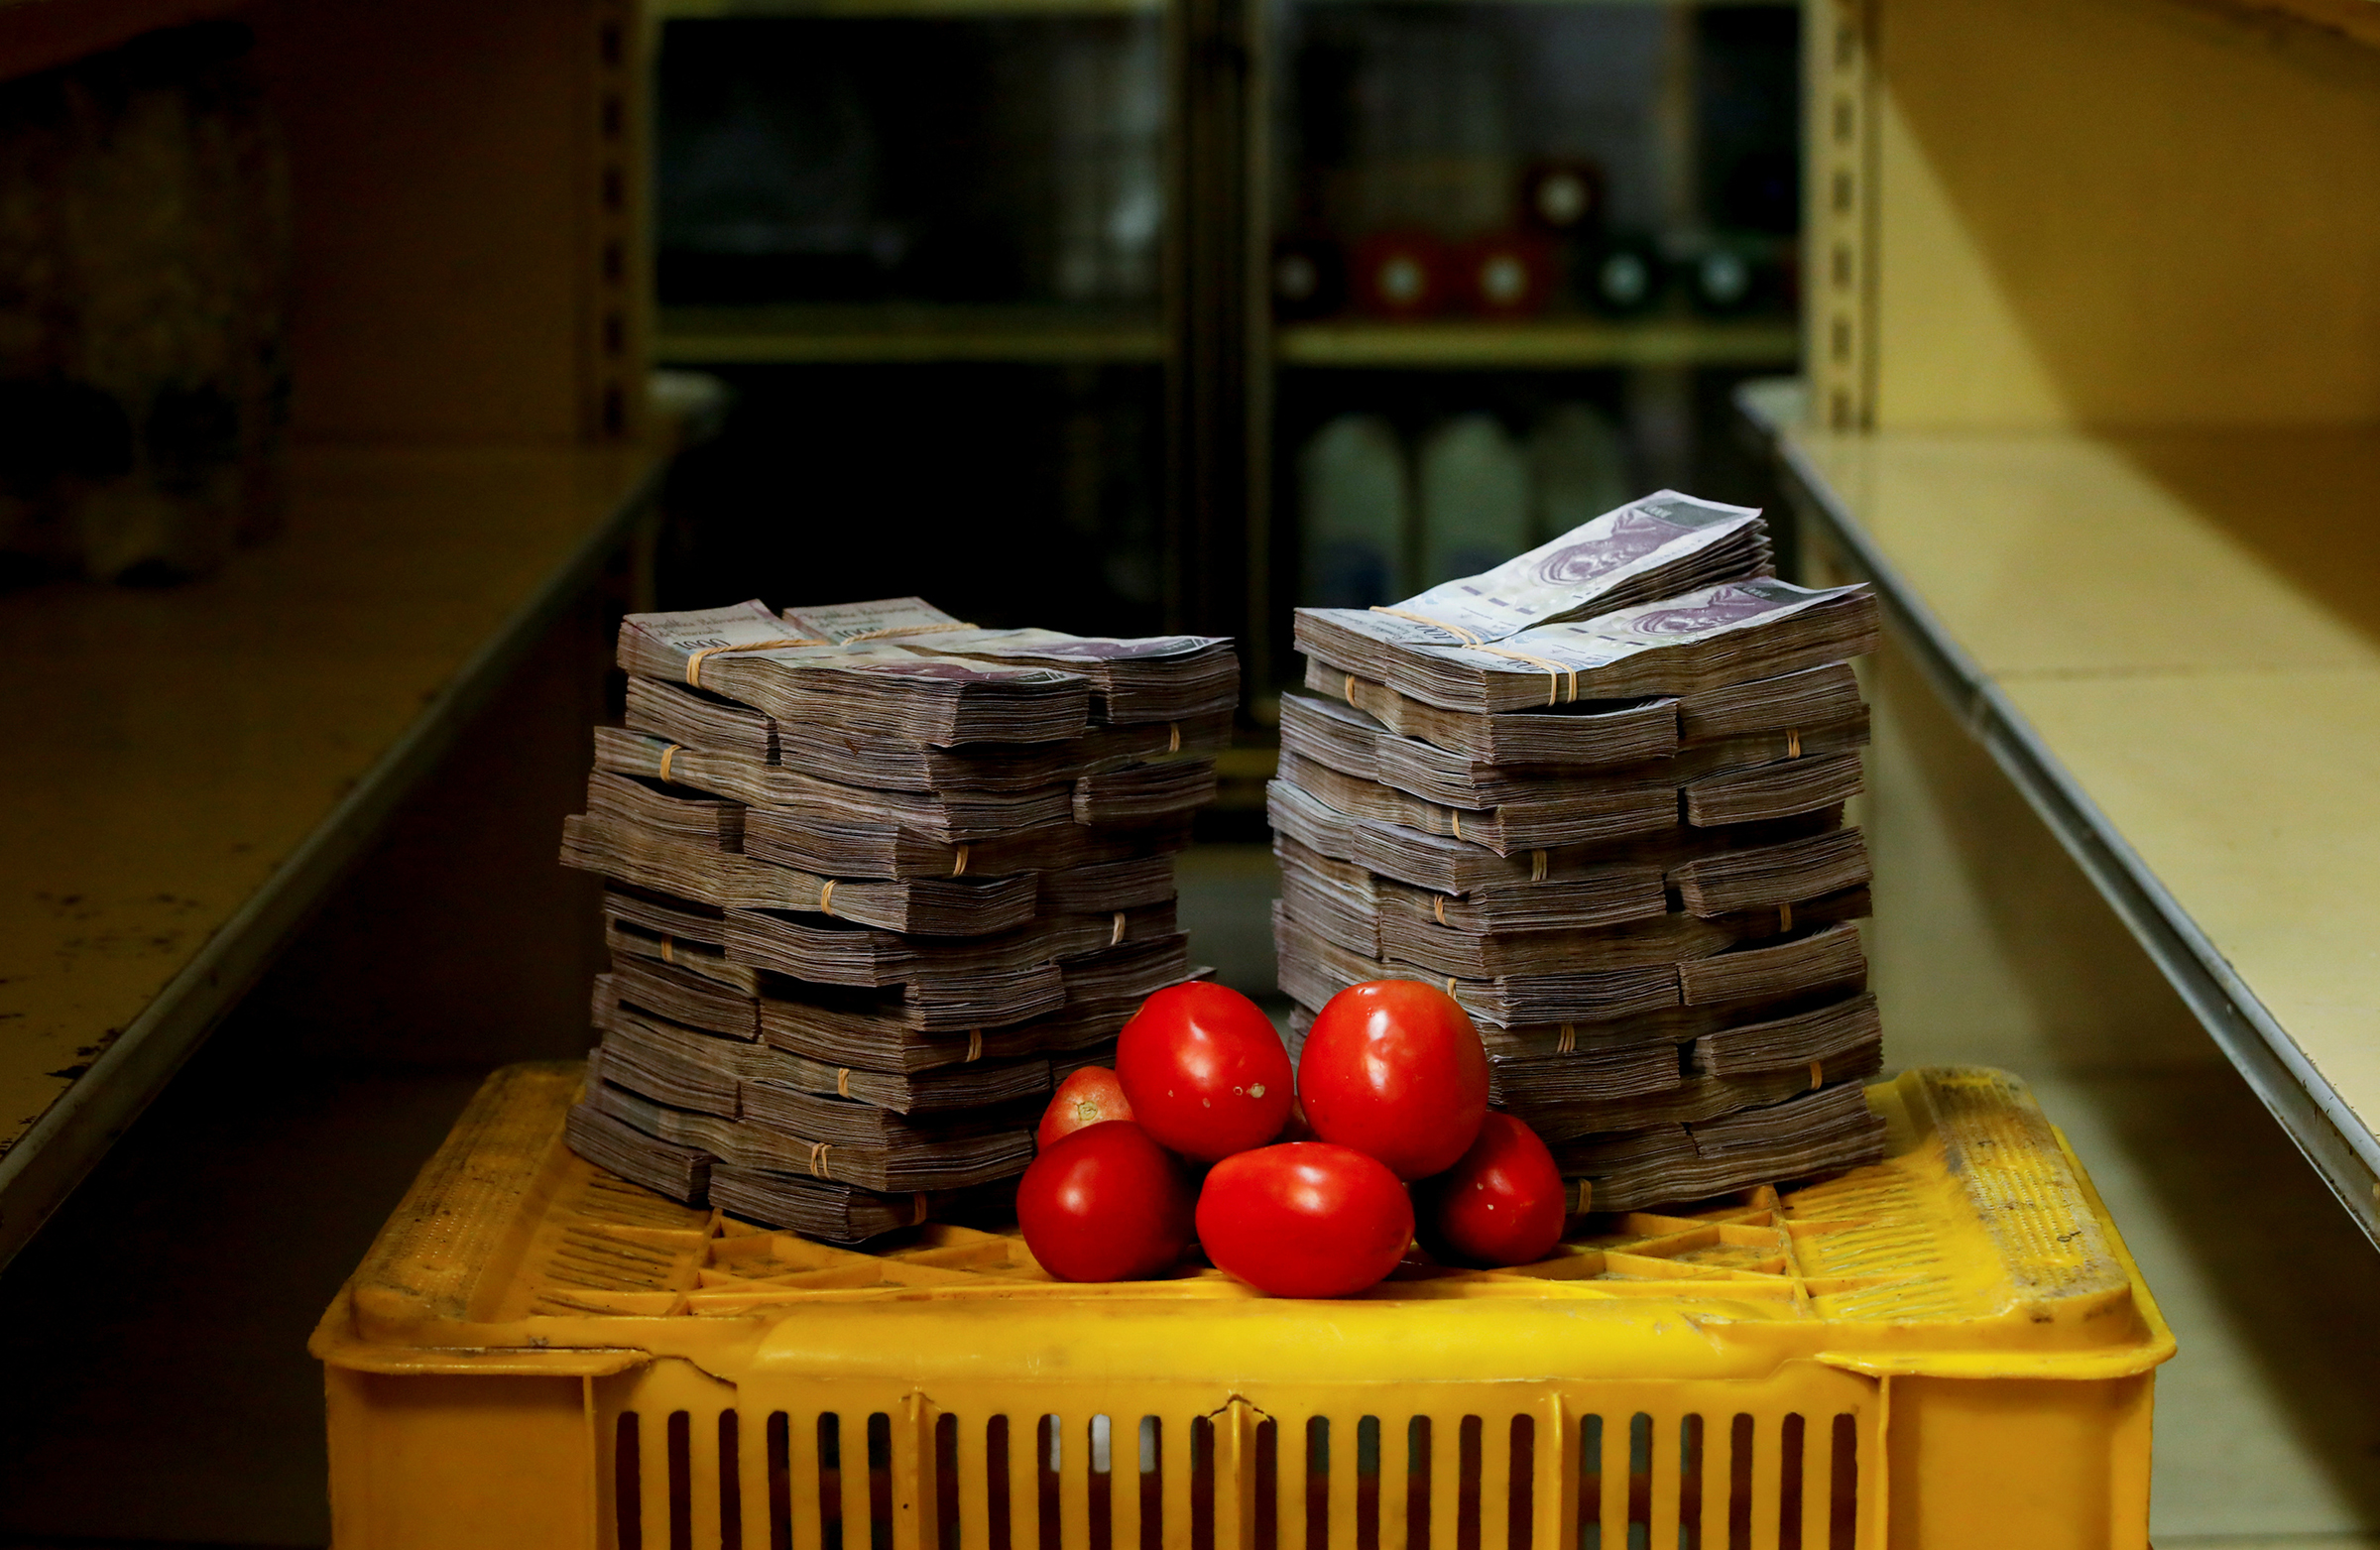 1&nbsp;кг помидоров стоит в магазине Каракаса 5 млн боливаров, или $0,76
